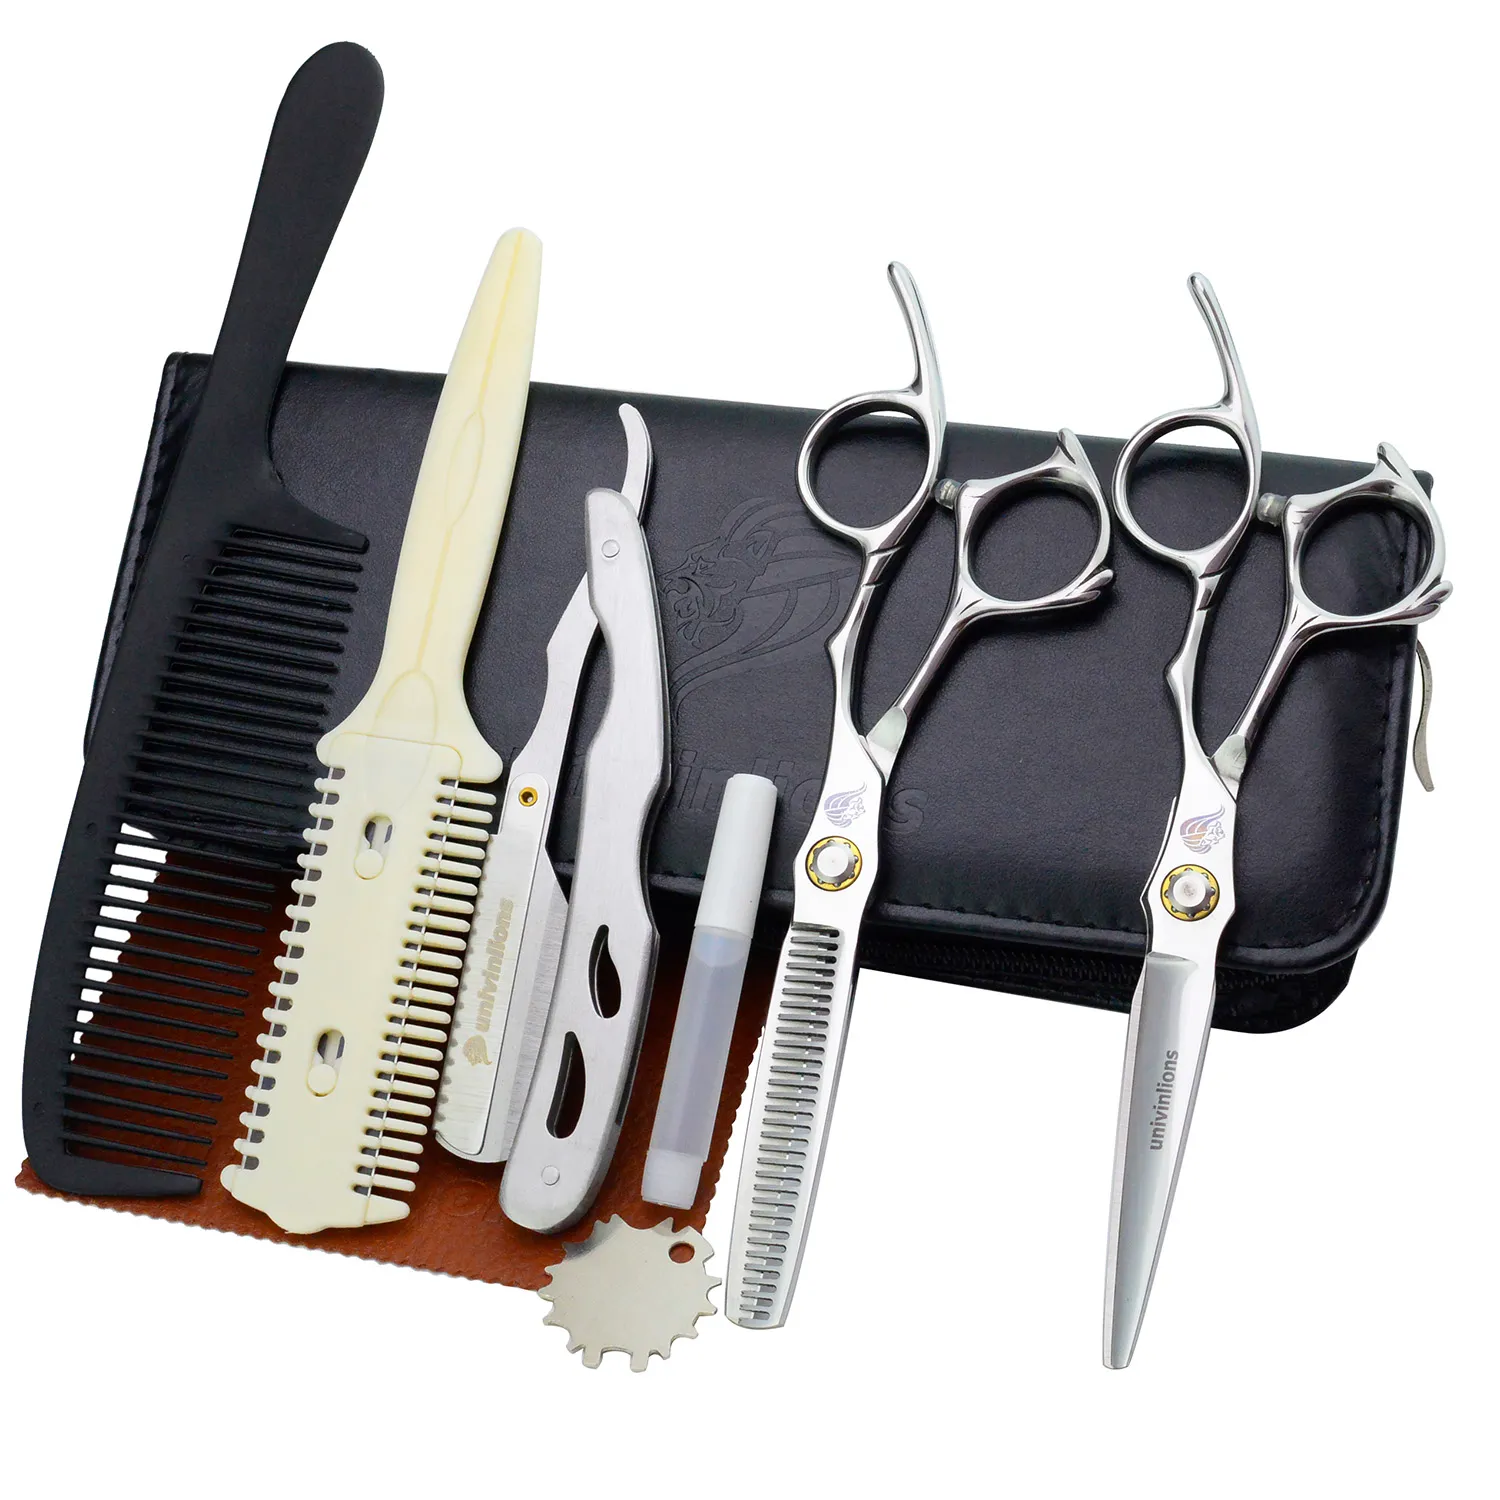 6" Bearing Screw Razor Barber Hair Scissors Japan Hairdressing Scissors for Cut Hair Shears Hair Dressing Scissors High Quality